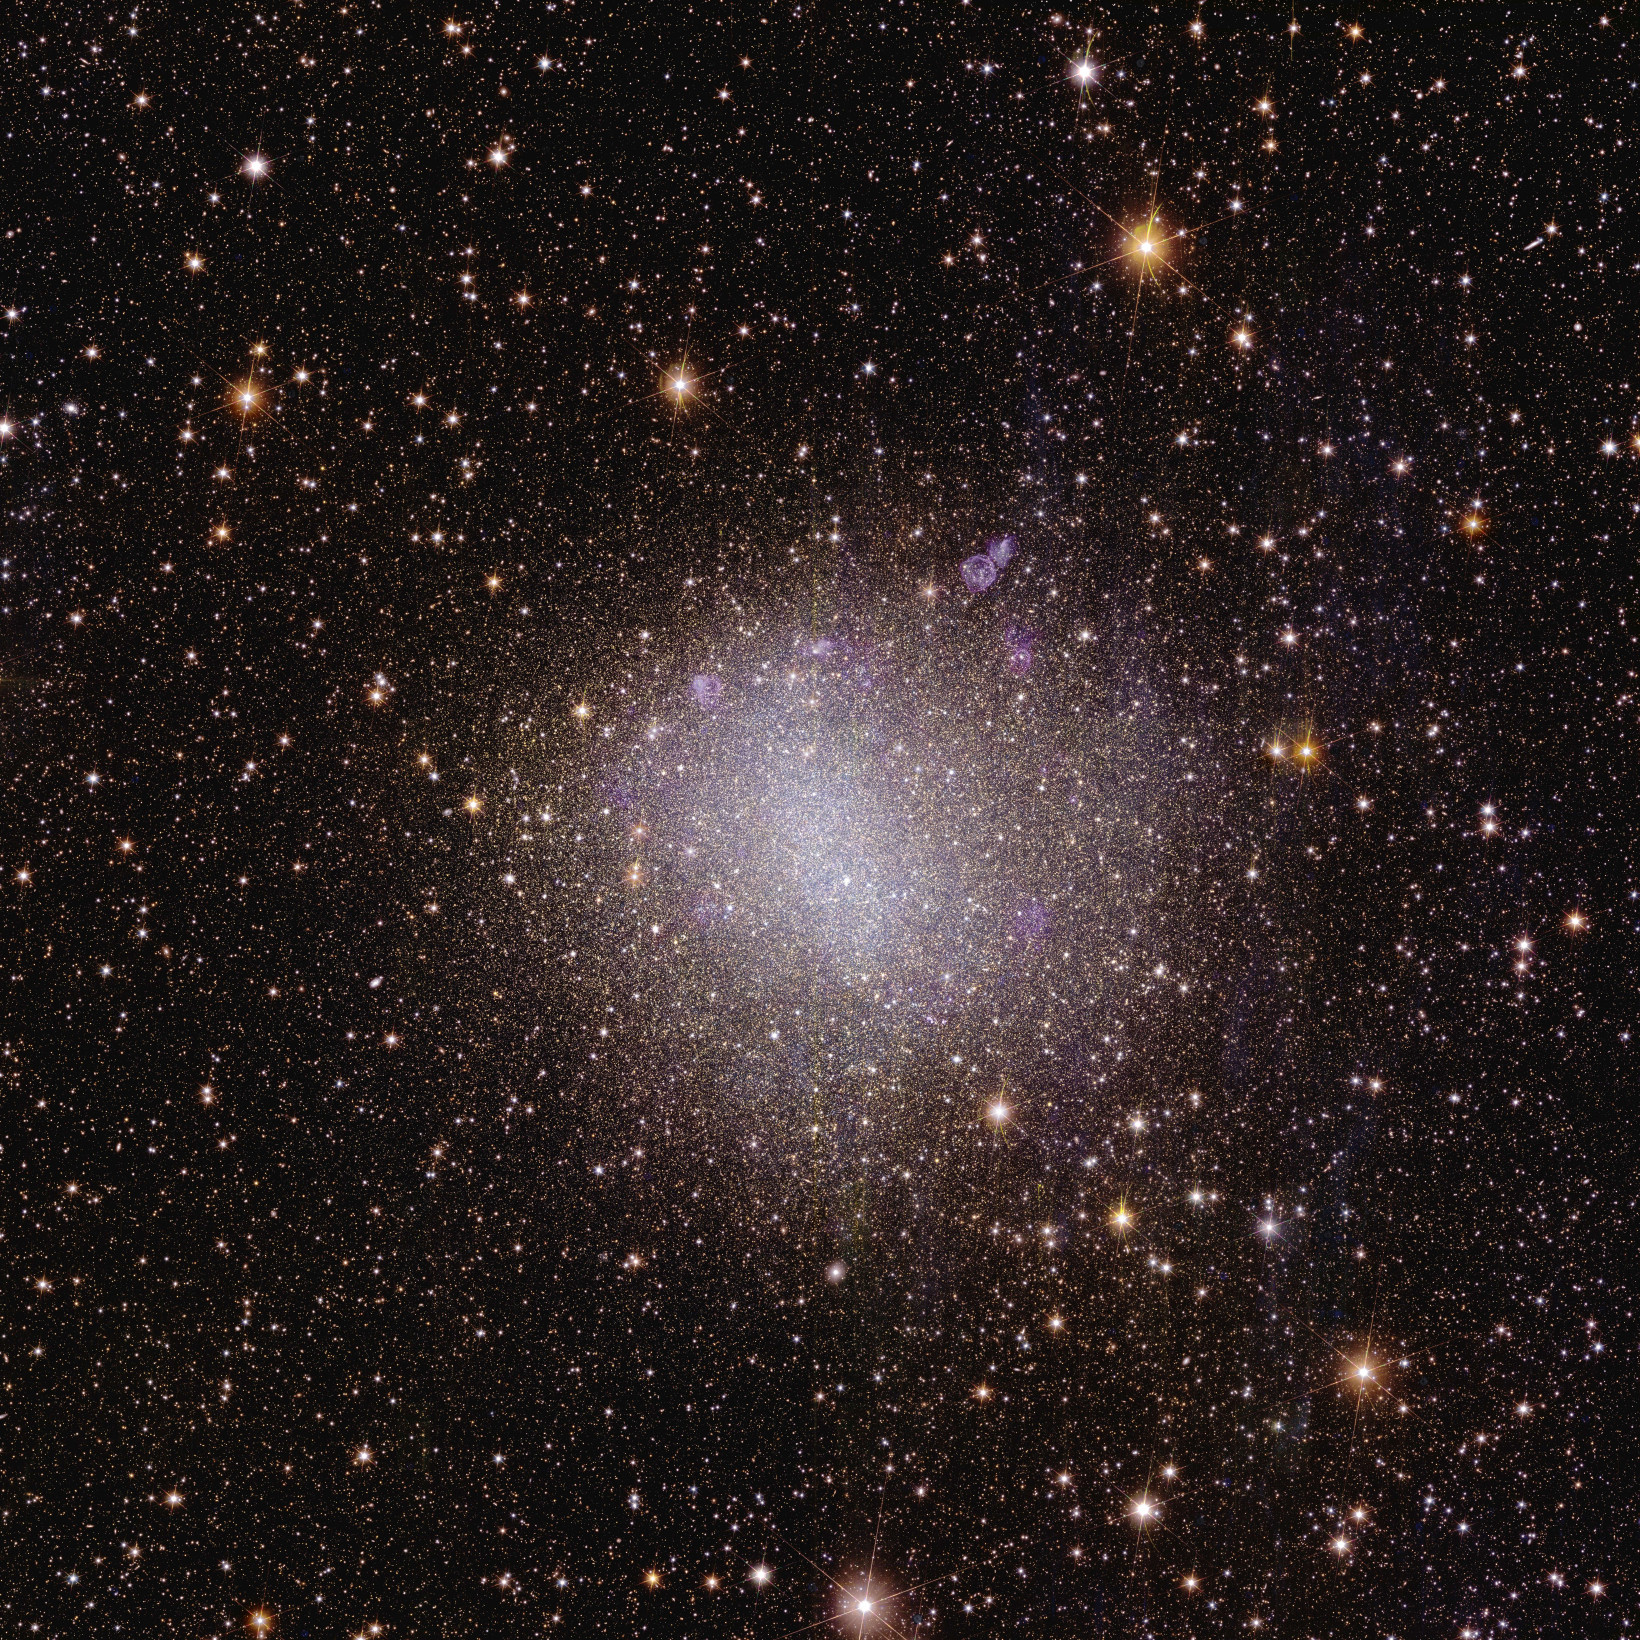 Uma imagem astronômica quadrada está salpicada de numerosas estrelas visíveis na extensão negra do espaço.  A maioria das estrelas são visíveis apenas como pontos precisos